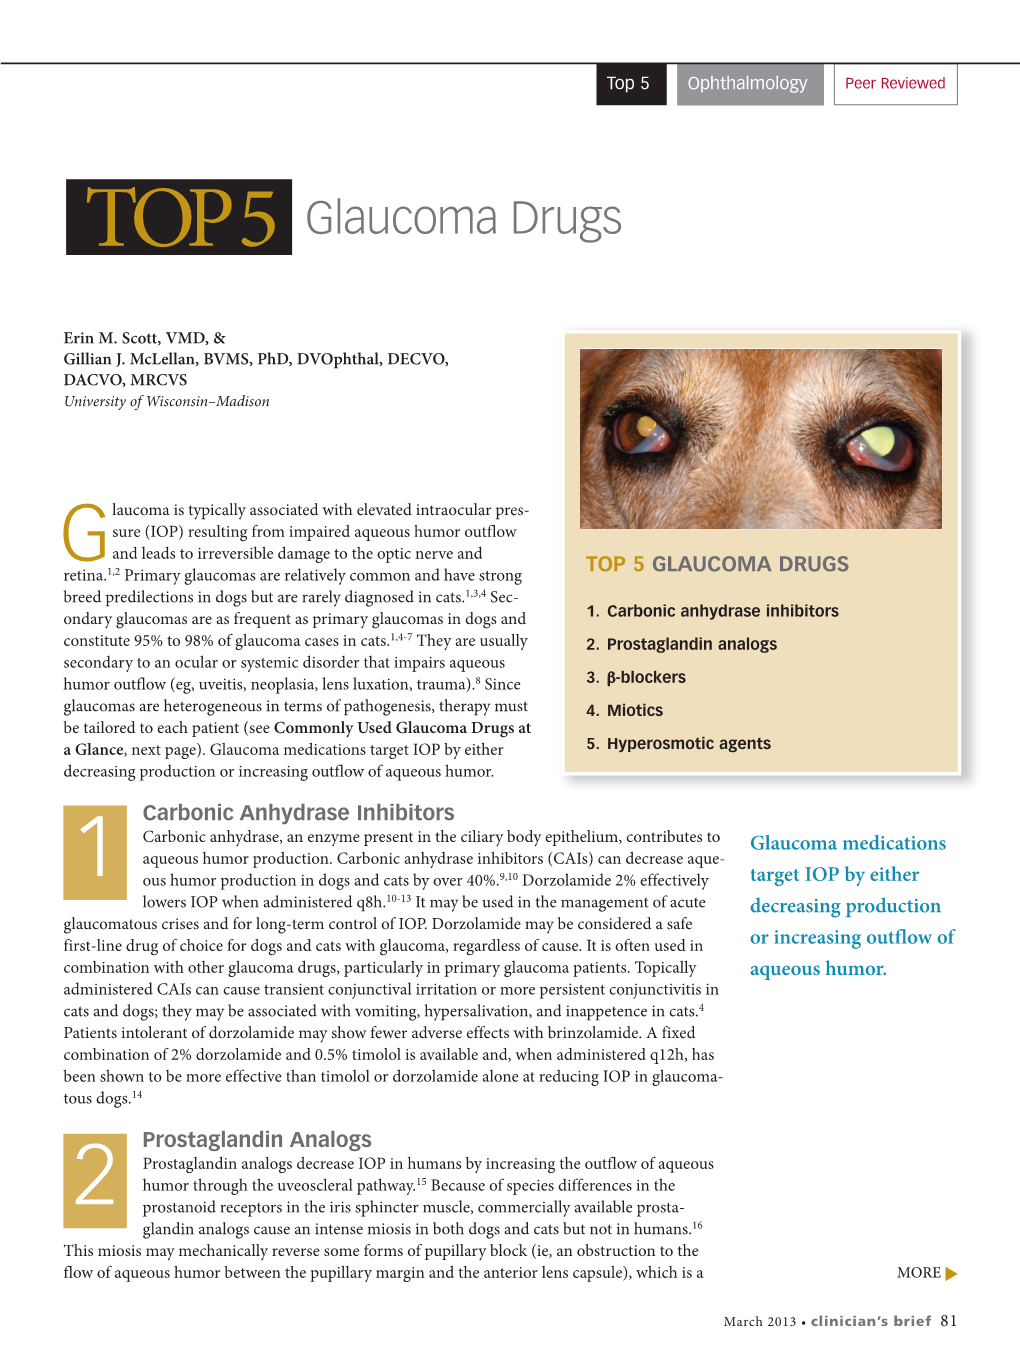 Glaucoma Drugs